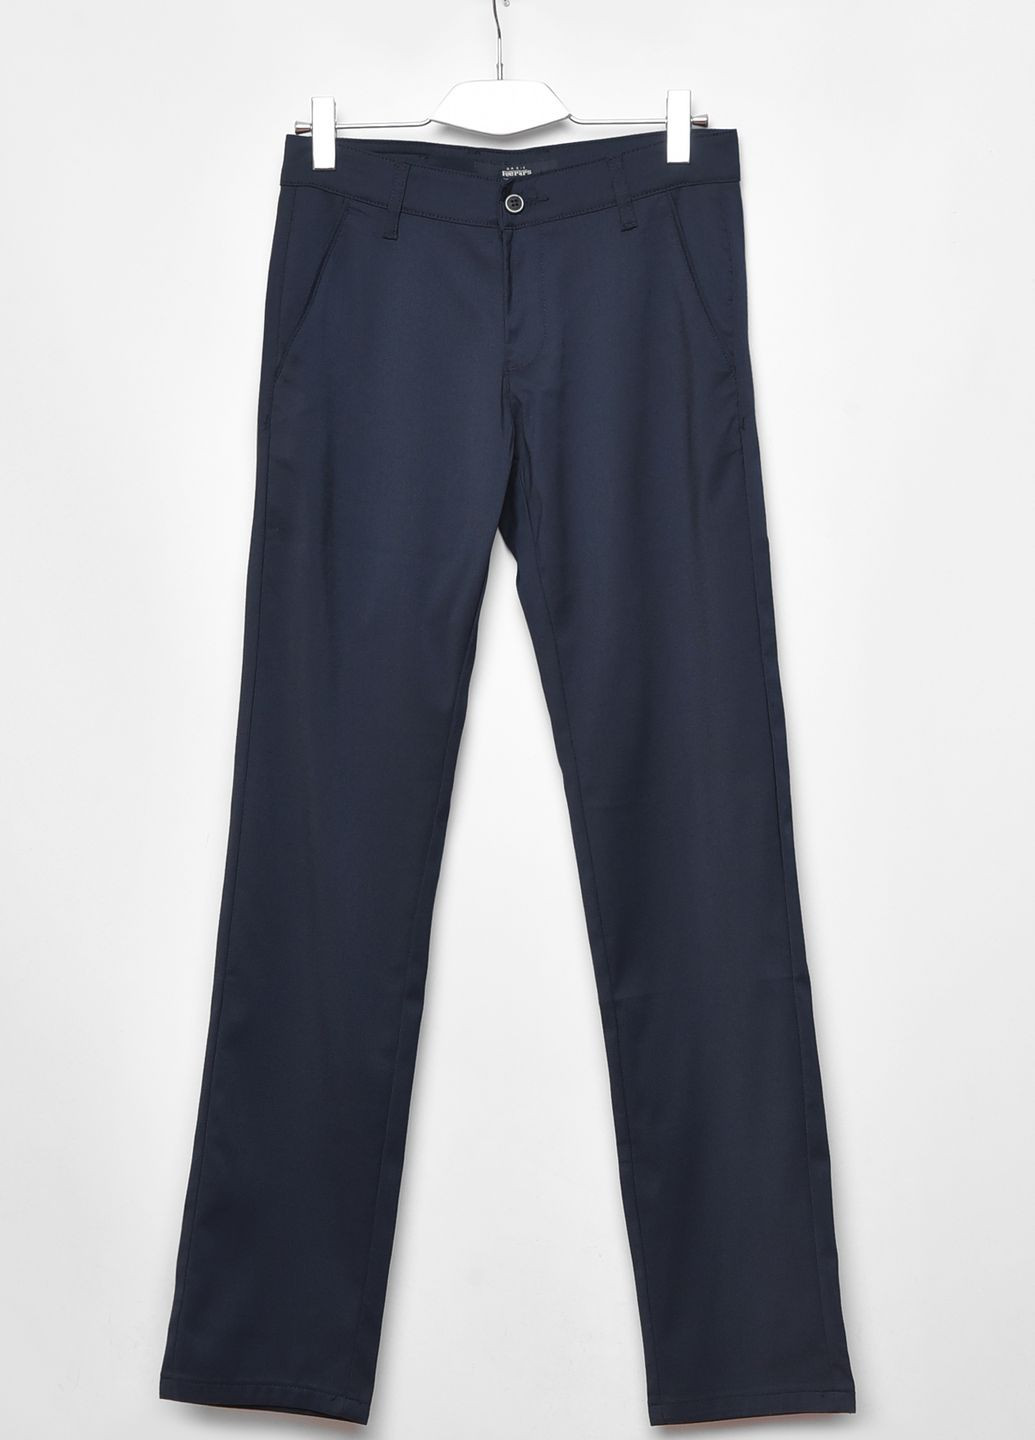 Темно-синие демисезонные прямые штаны мужские темно-синего цвета размер 29 Let's Shop